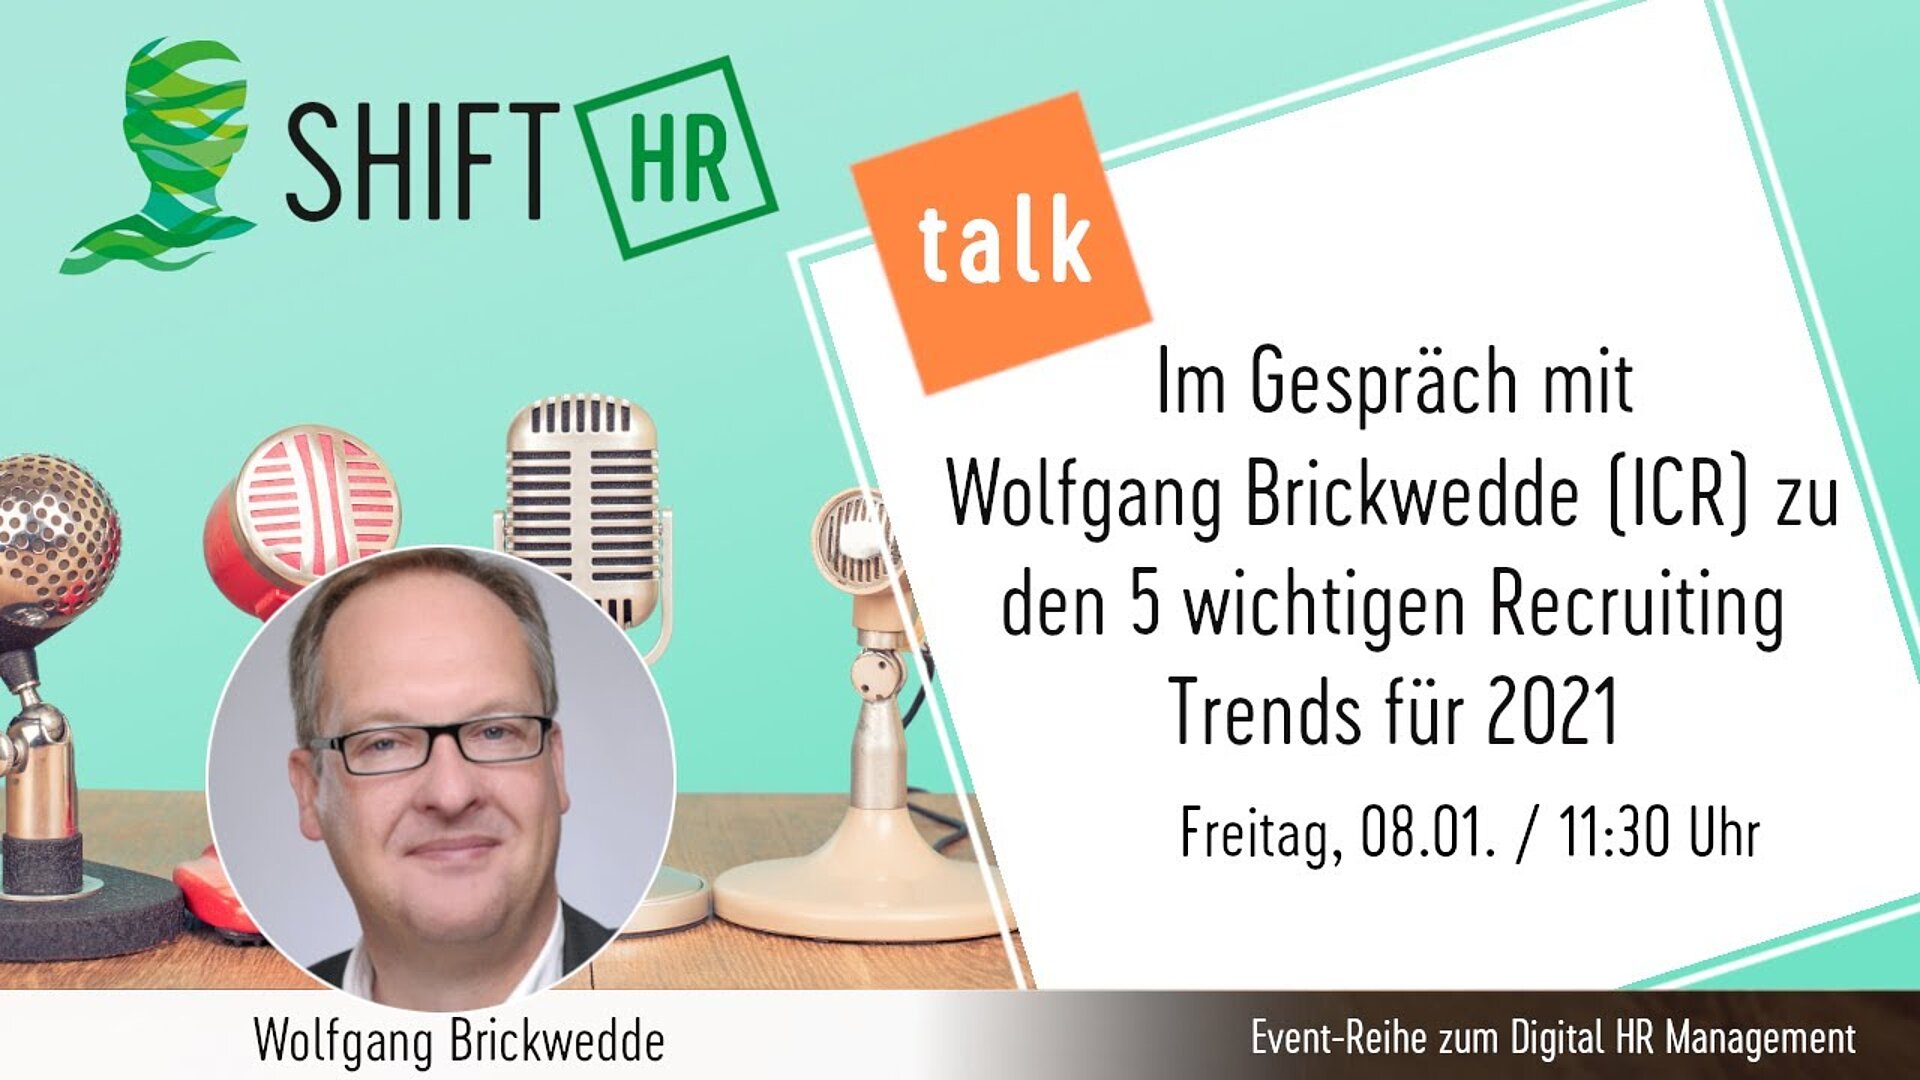 Im Gespräch mit Wolfgang Brickwedde zu den 5 wichtigen Recruiting Trends für 2021